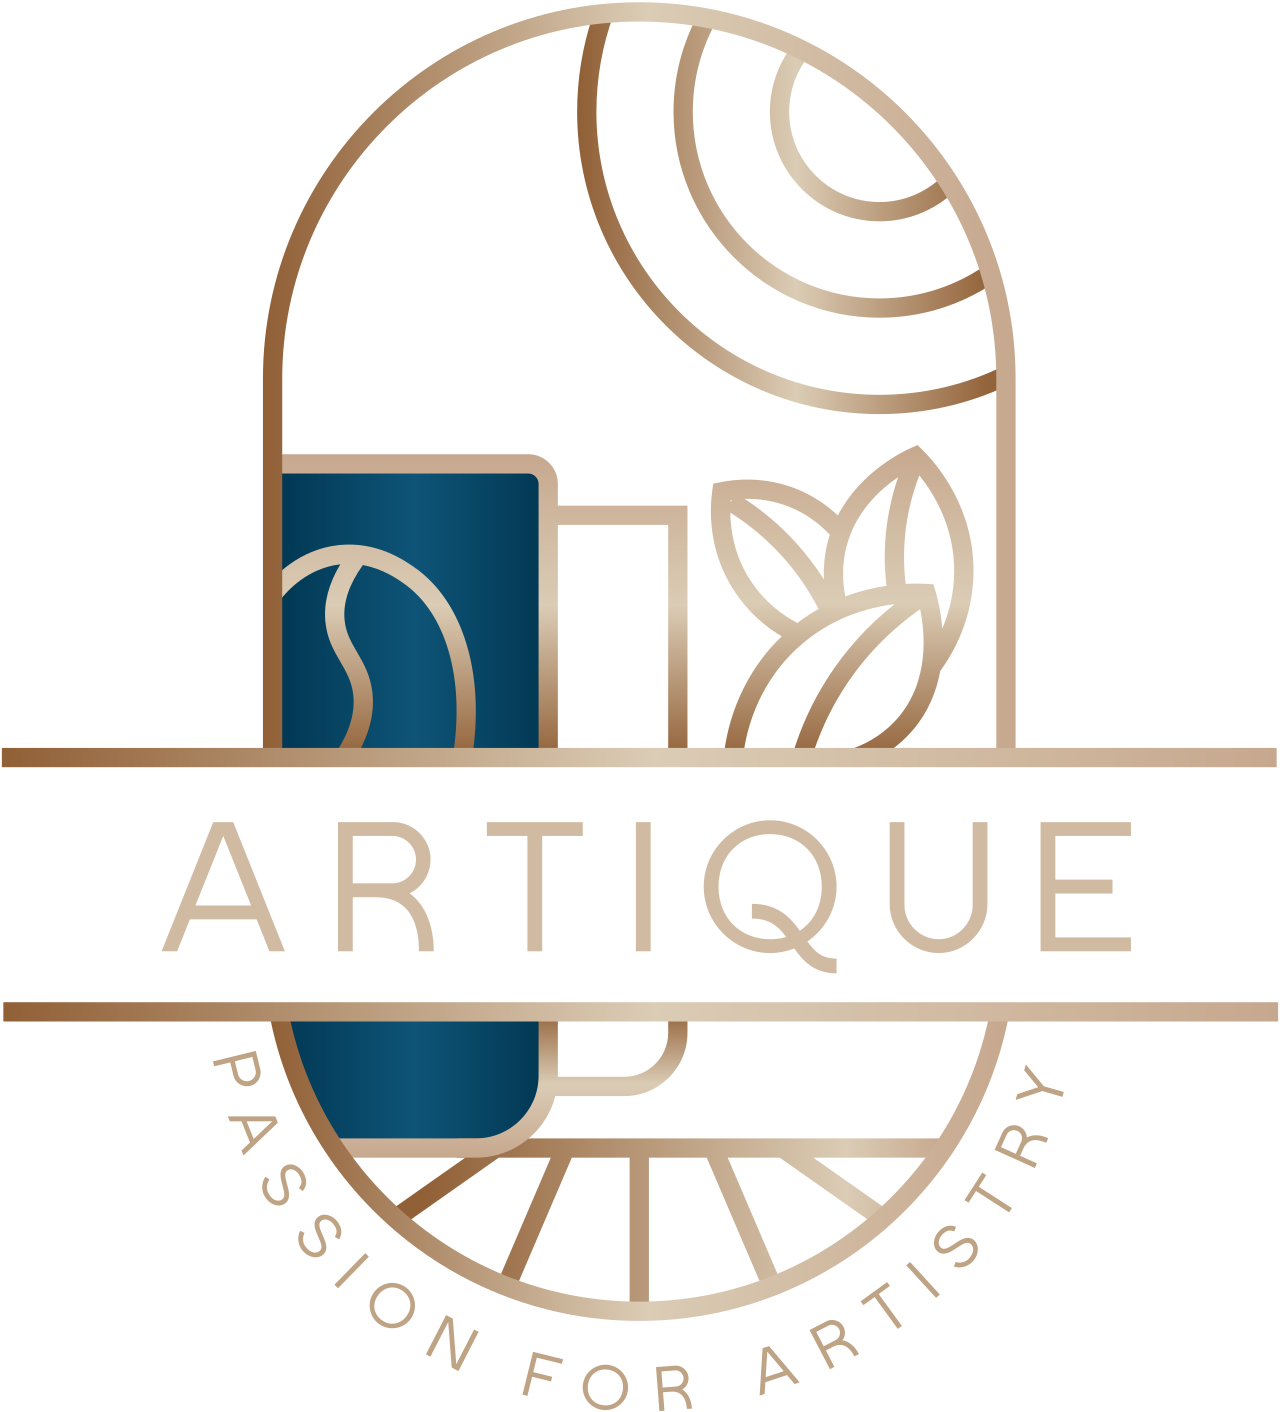 Artique 's logo